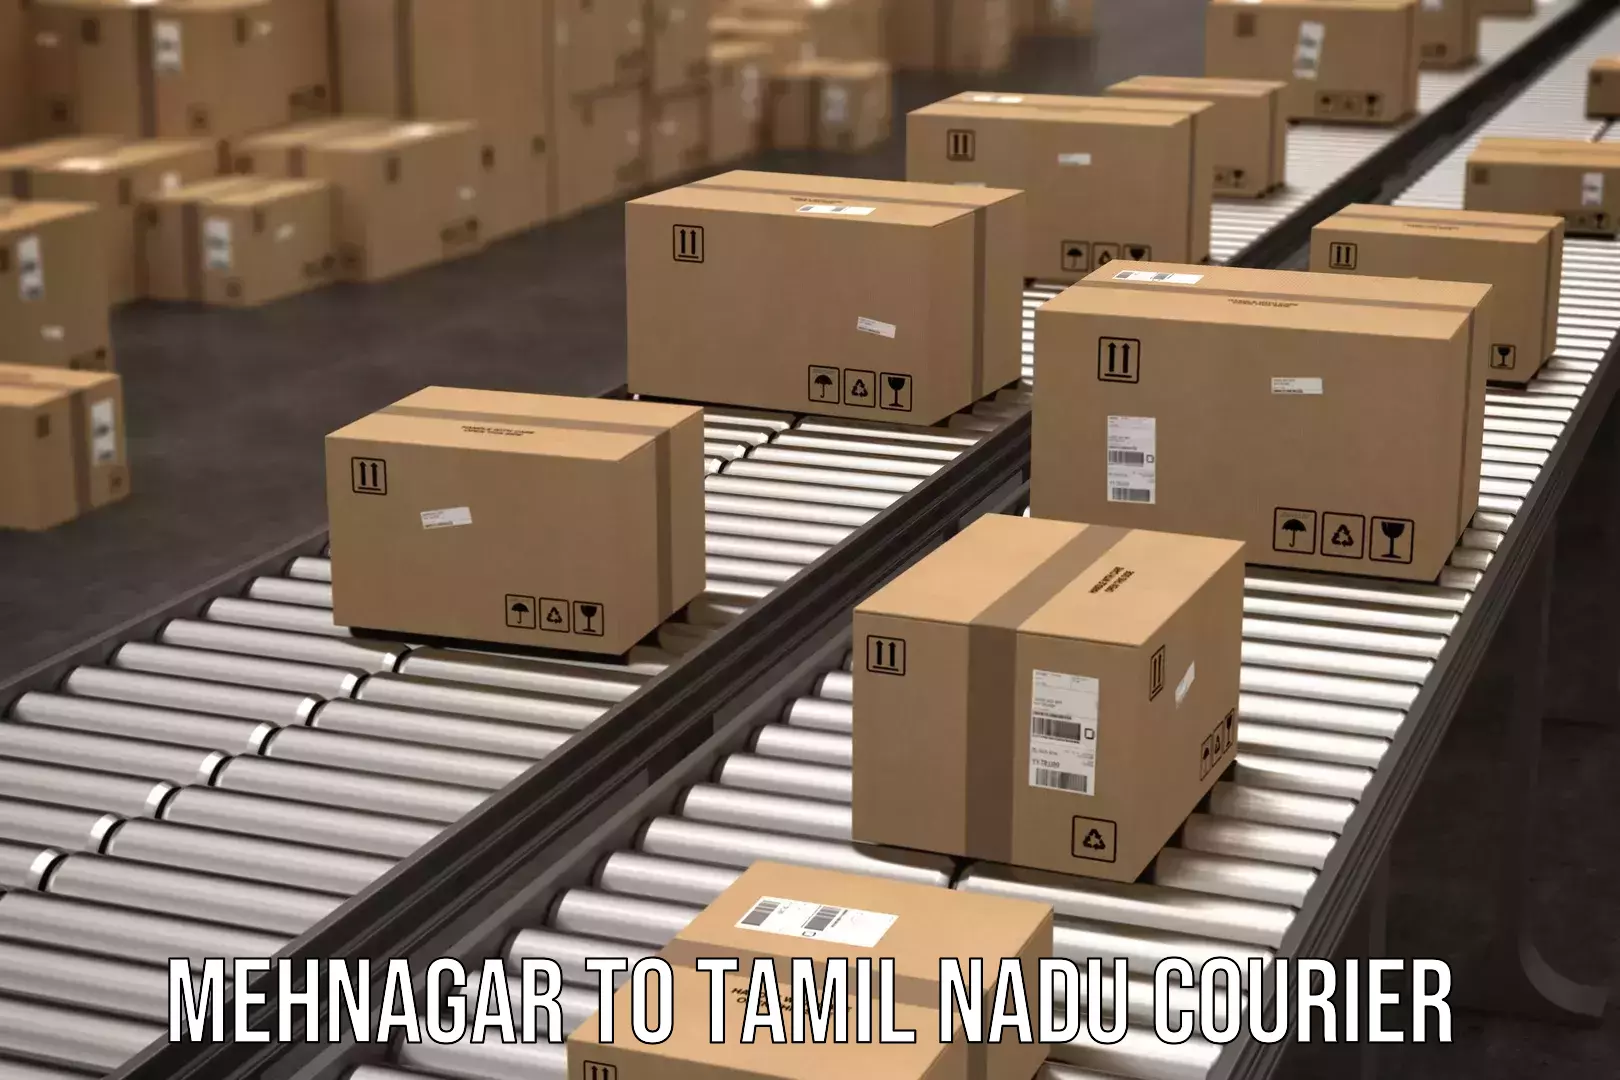 Cargo delivery service Mehnagar to Periyakulam